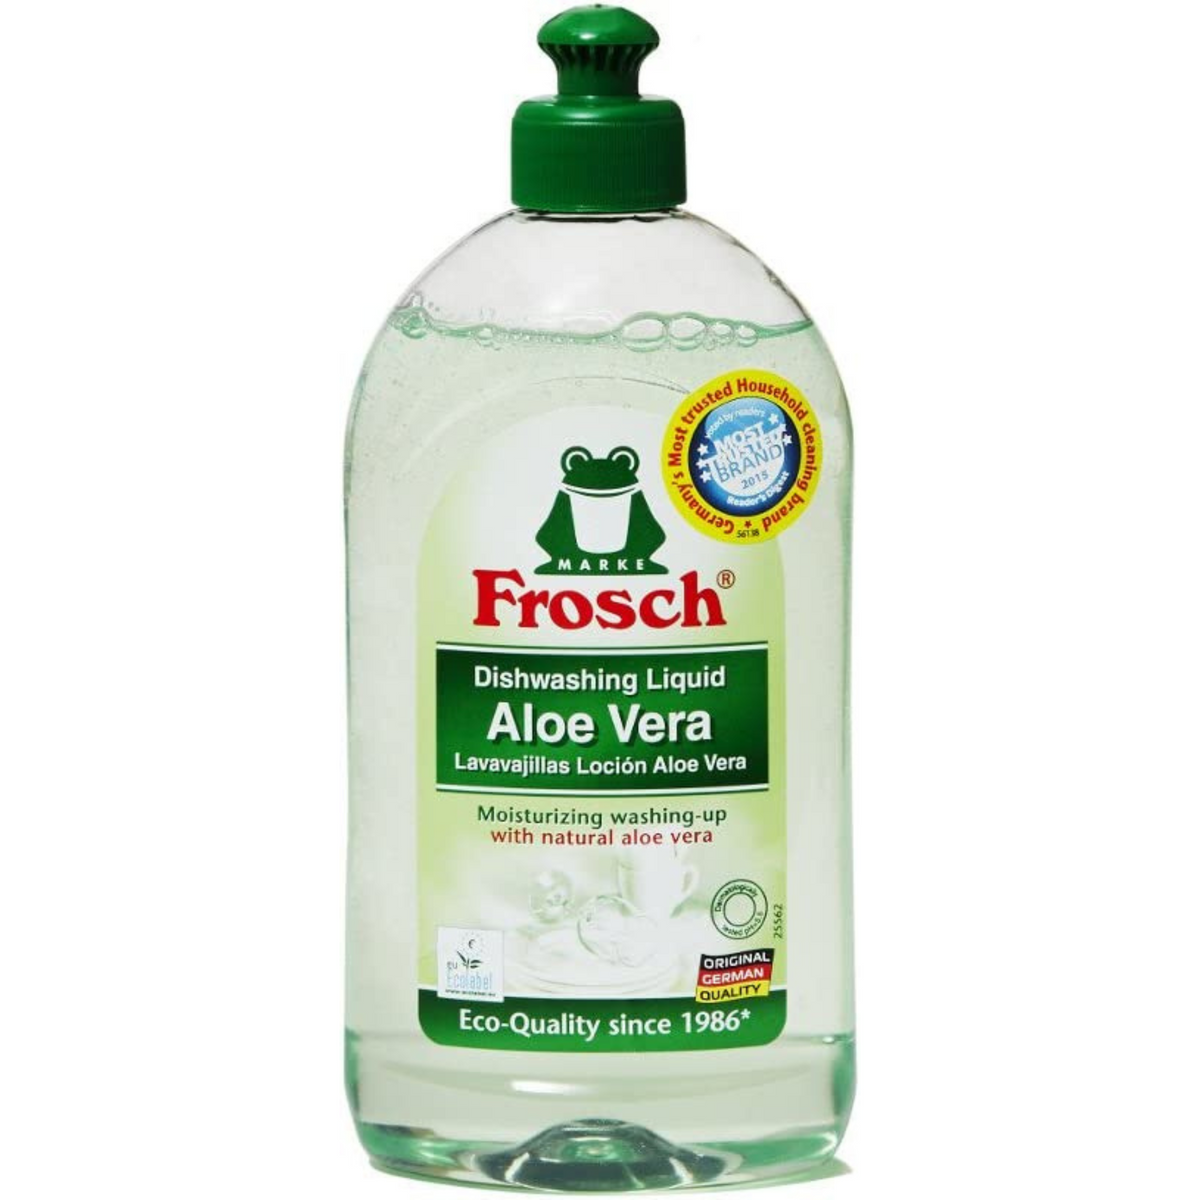 Primary Image of Frosch Aloe Vera Liquid Dish Soap (500 ml) 